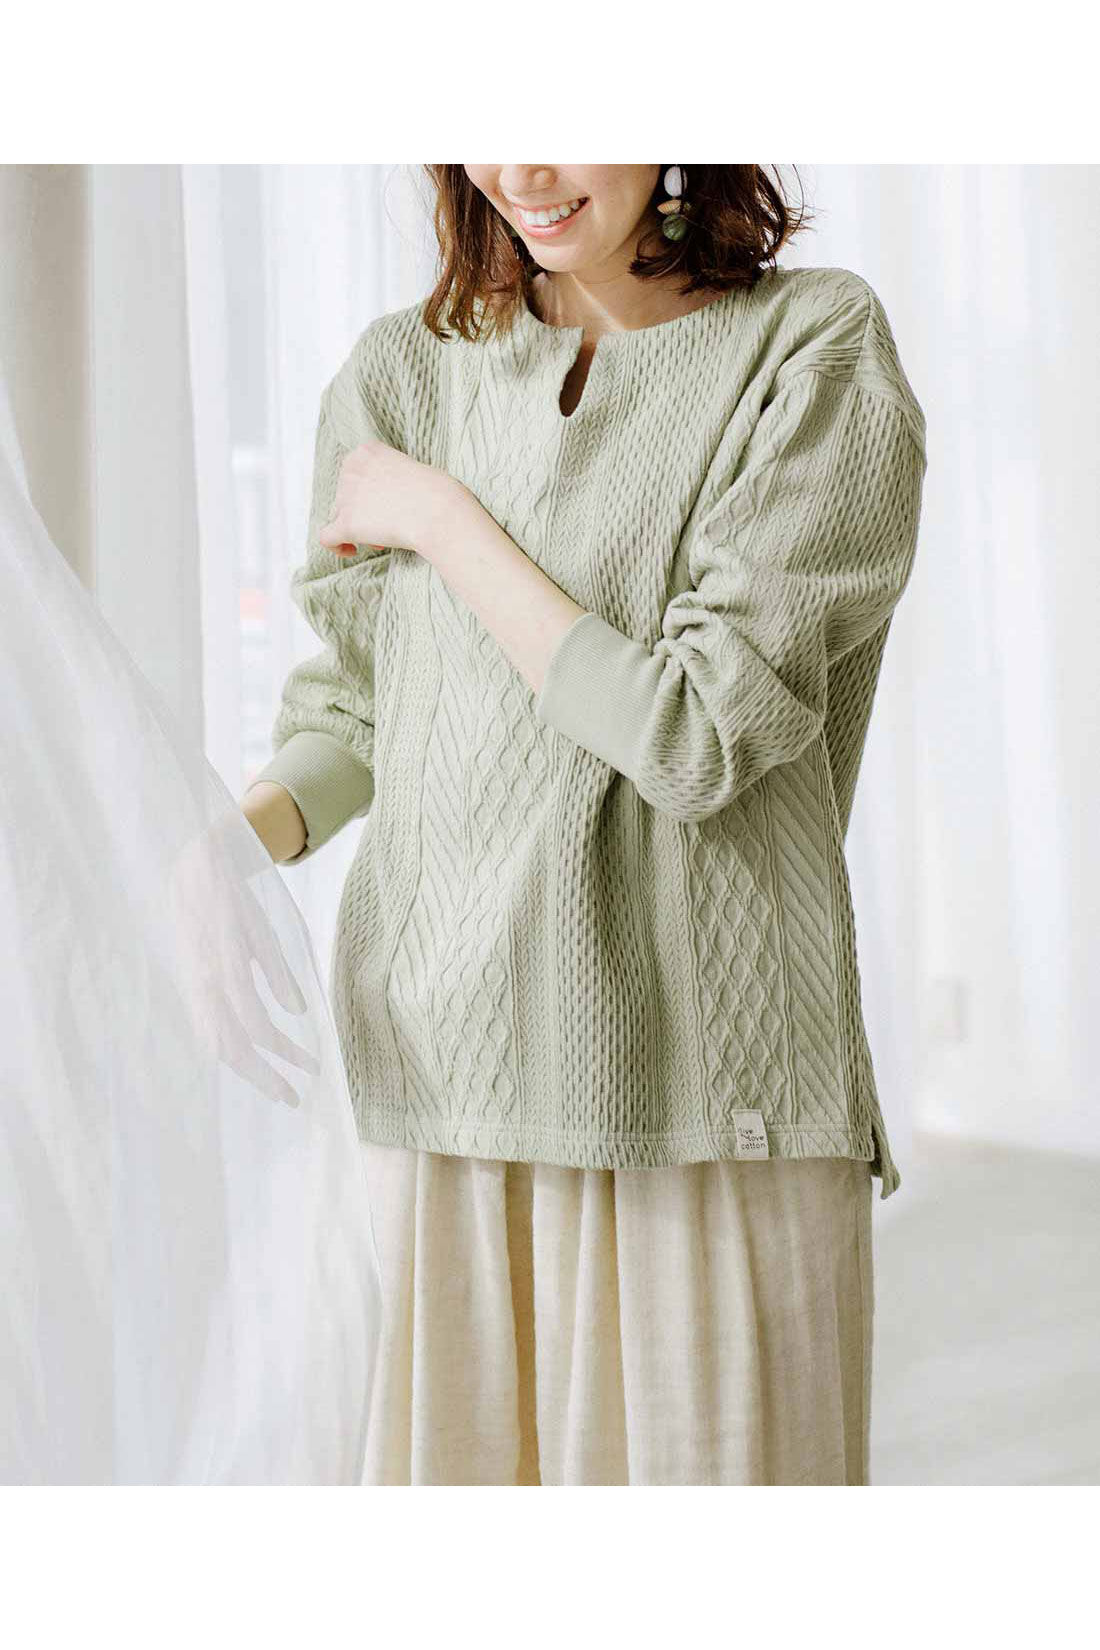 Live in  comfort|Live love cottonプロジェクト　リブ イン コンフォート　編み柄が素敵な袖口リブオーガニックコットントップス〈ミント〉|※着用イメージです。お届けするカラーとは異なります。